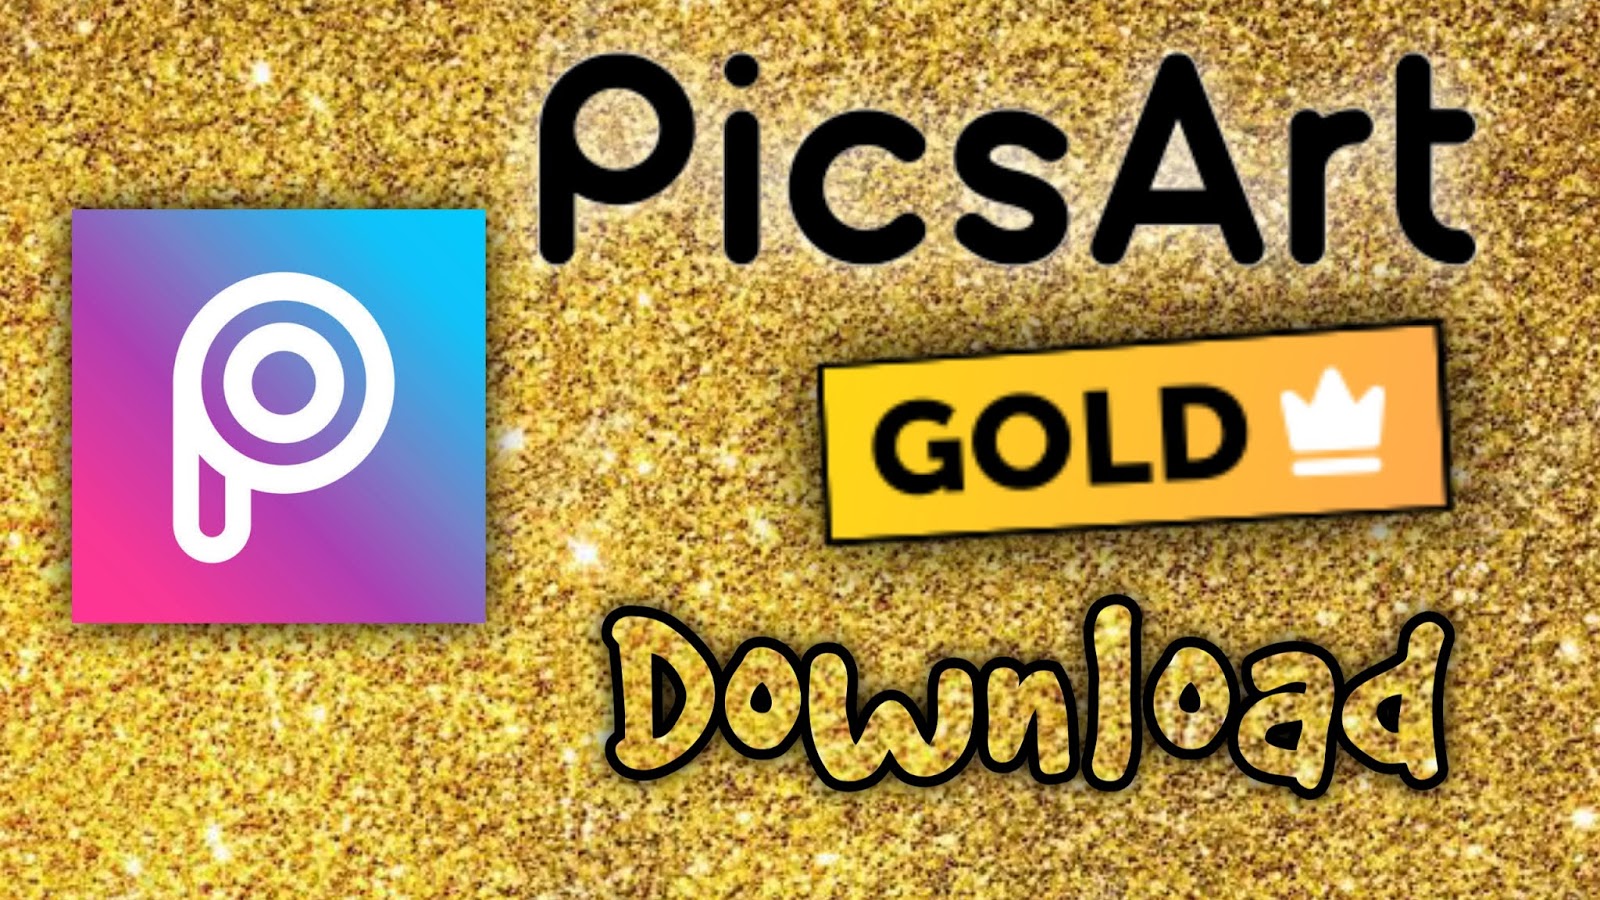 PicsArt Gold Mod